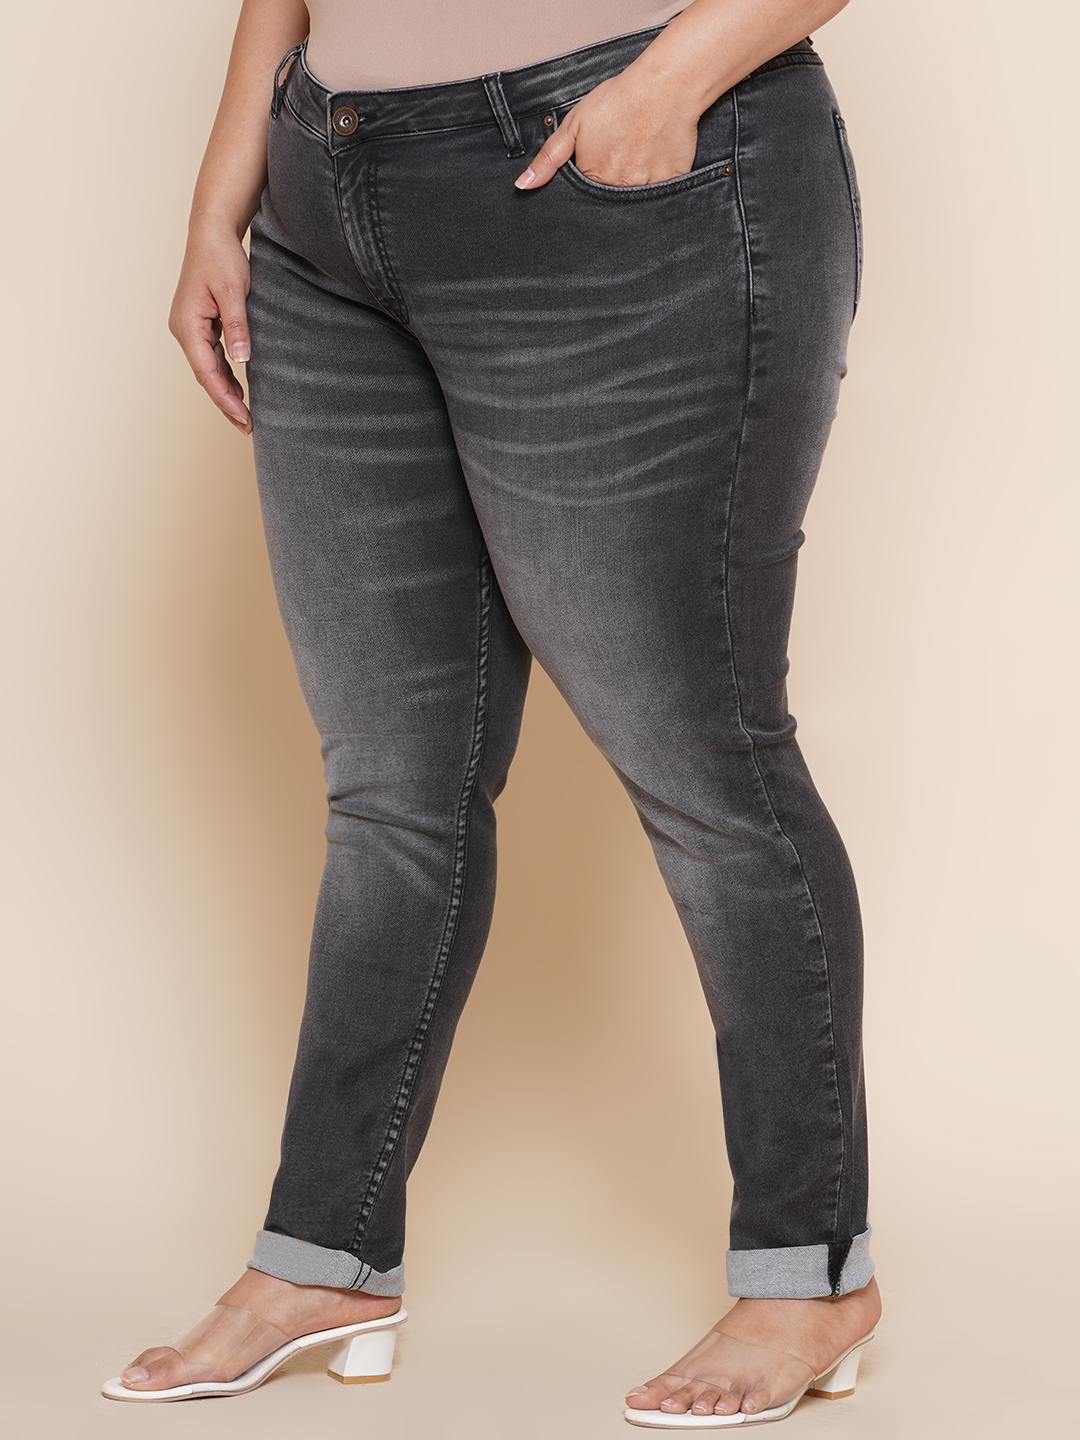 bottomwear_kiaahvi/jeans/KIJ6010/kij6010-4.jpg